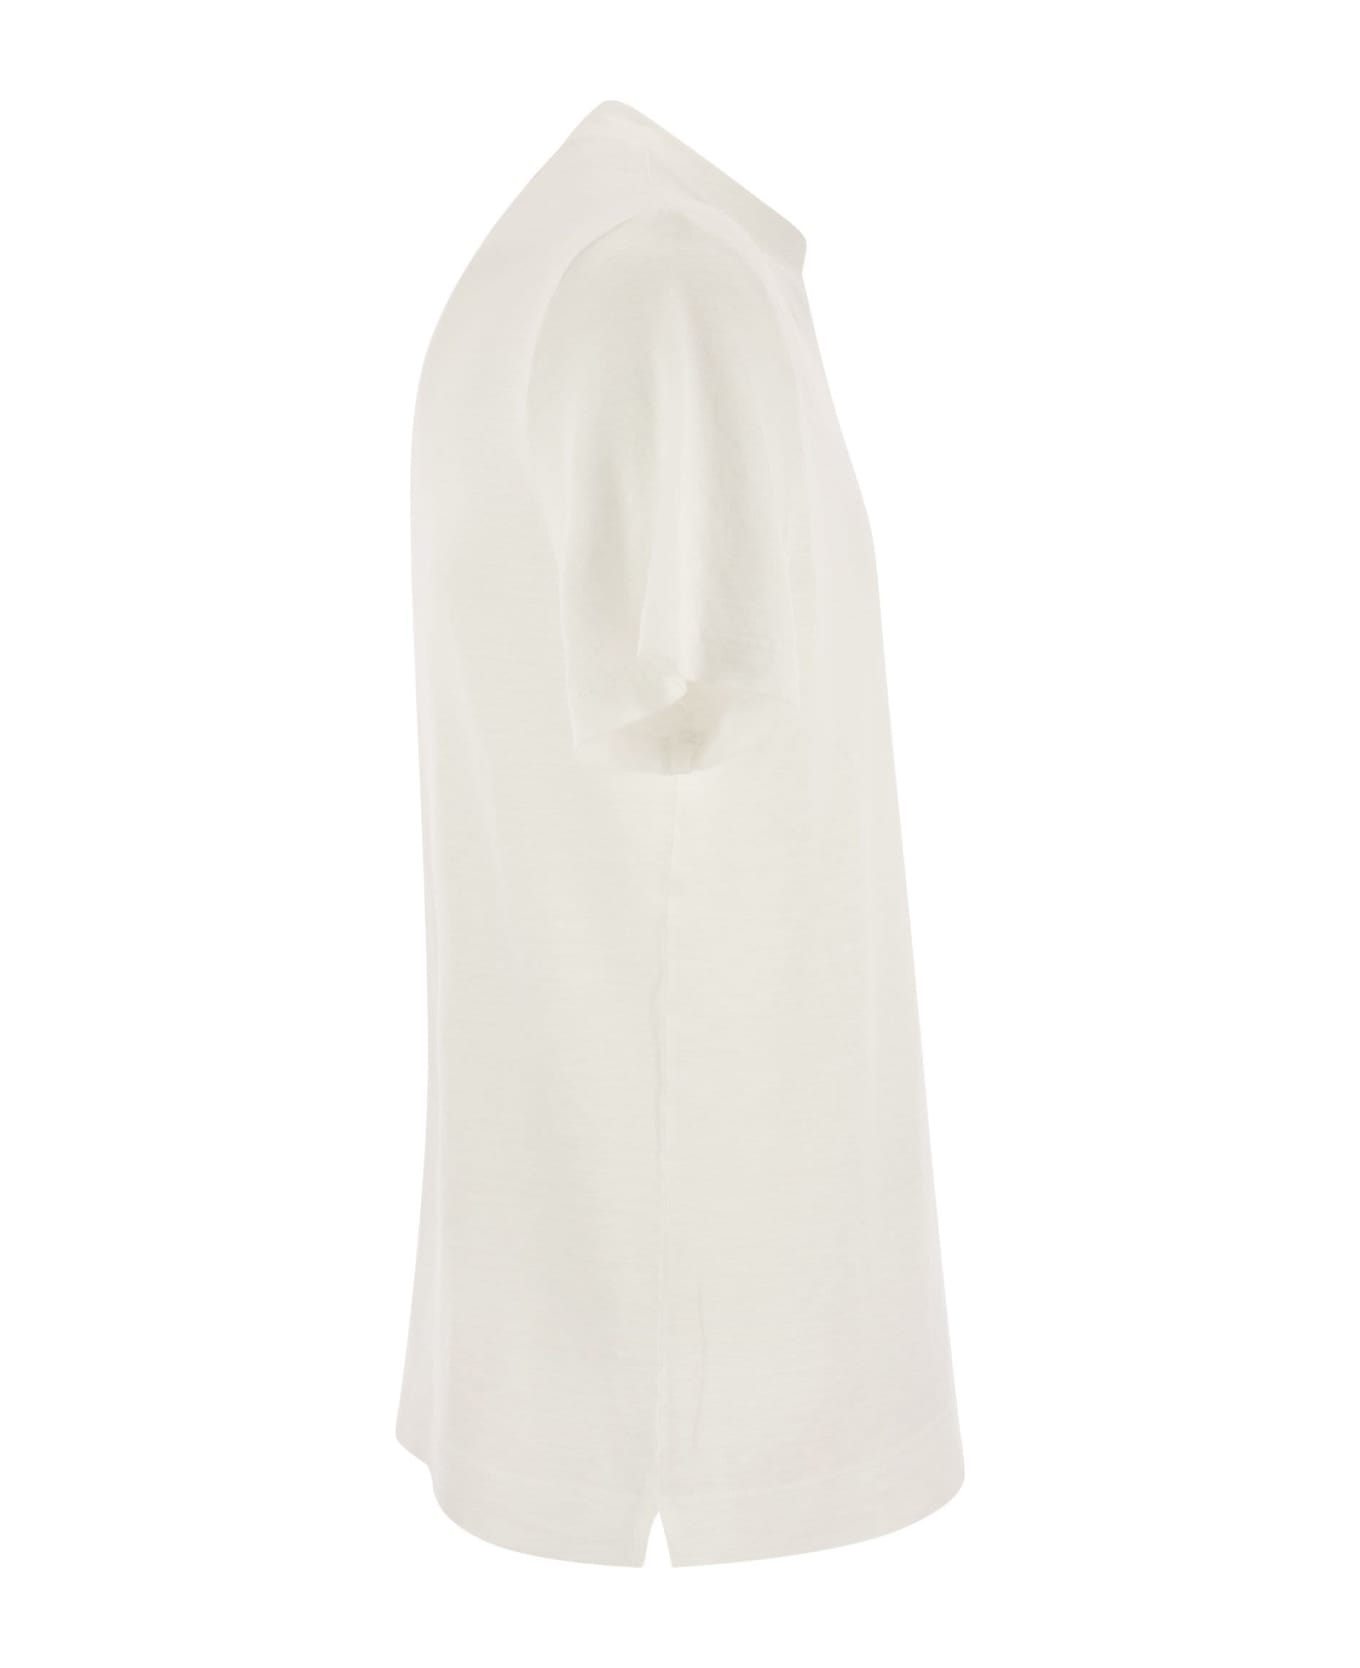 Fedeli Exreme - Linen Flex T-shirt - White シャツ